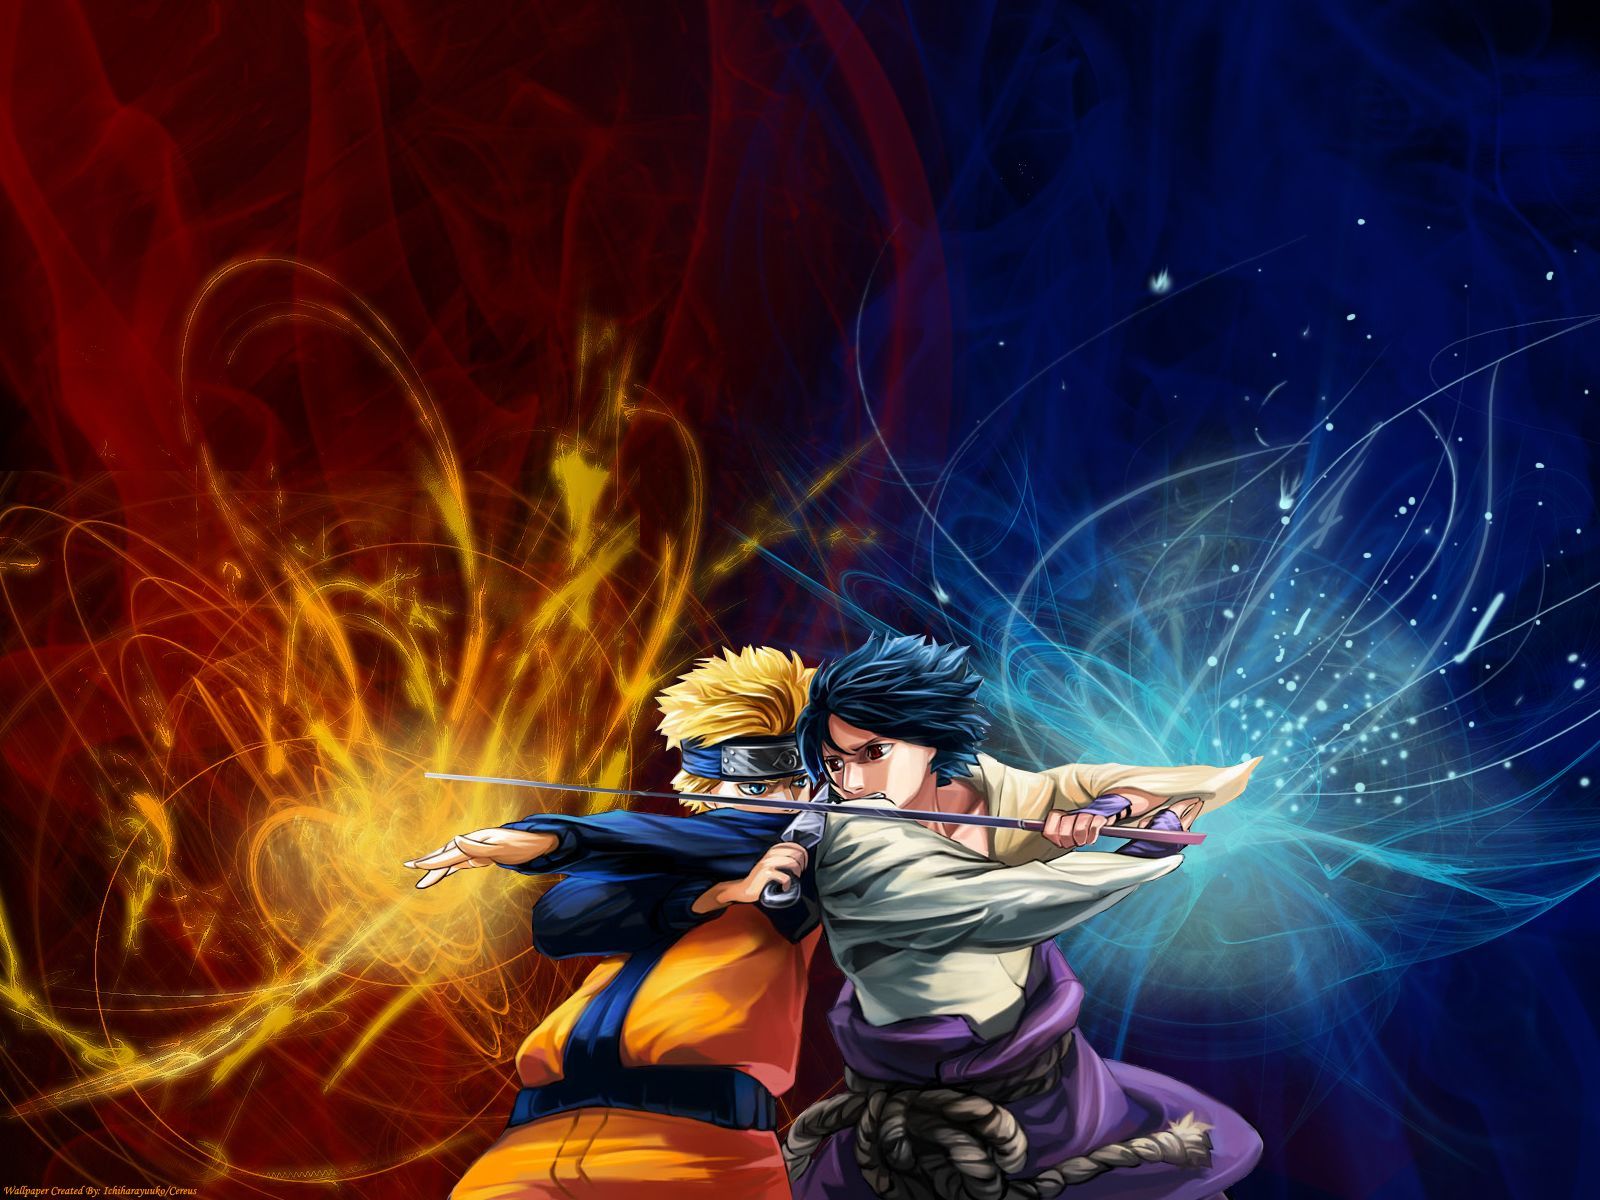 Naruto Vs Sasuke Wallpaper 21. The Art Mad